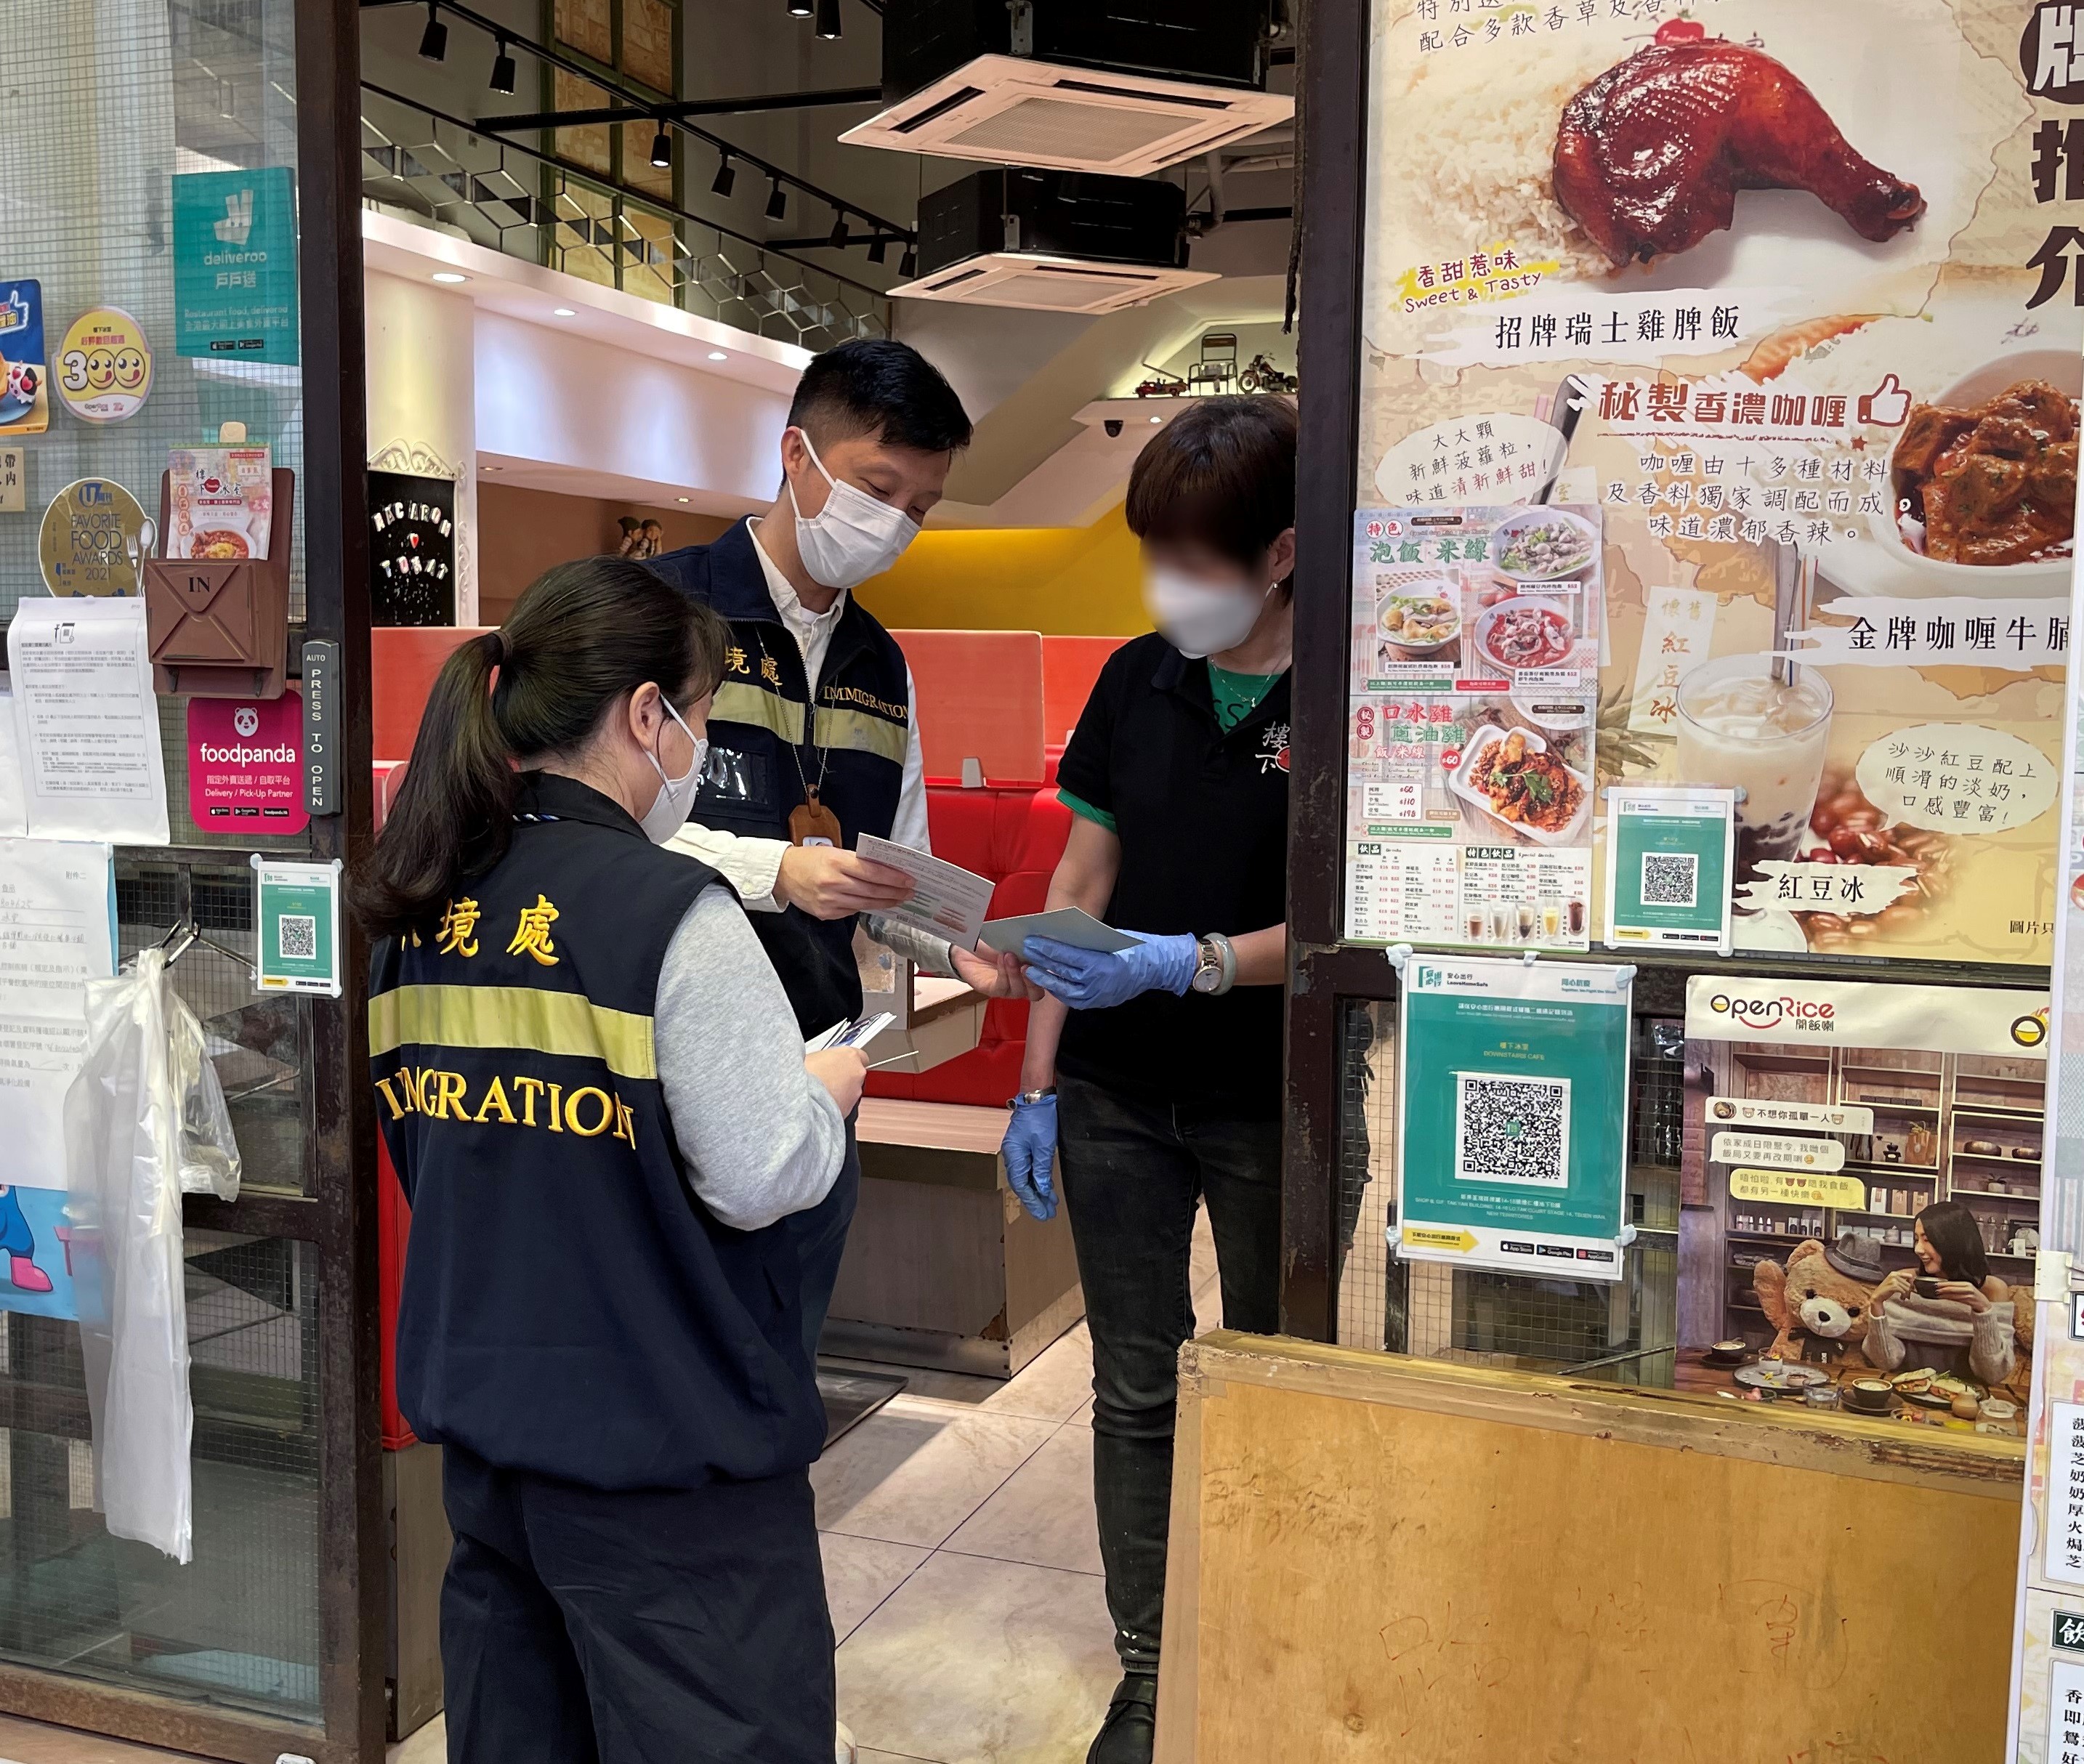 入境事务处人员向食肆职员派发「切勿聘用非法劳工」的宣传单张。